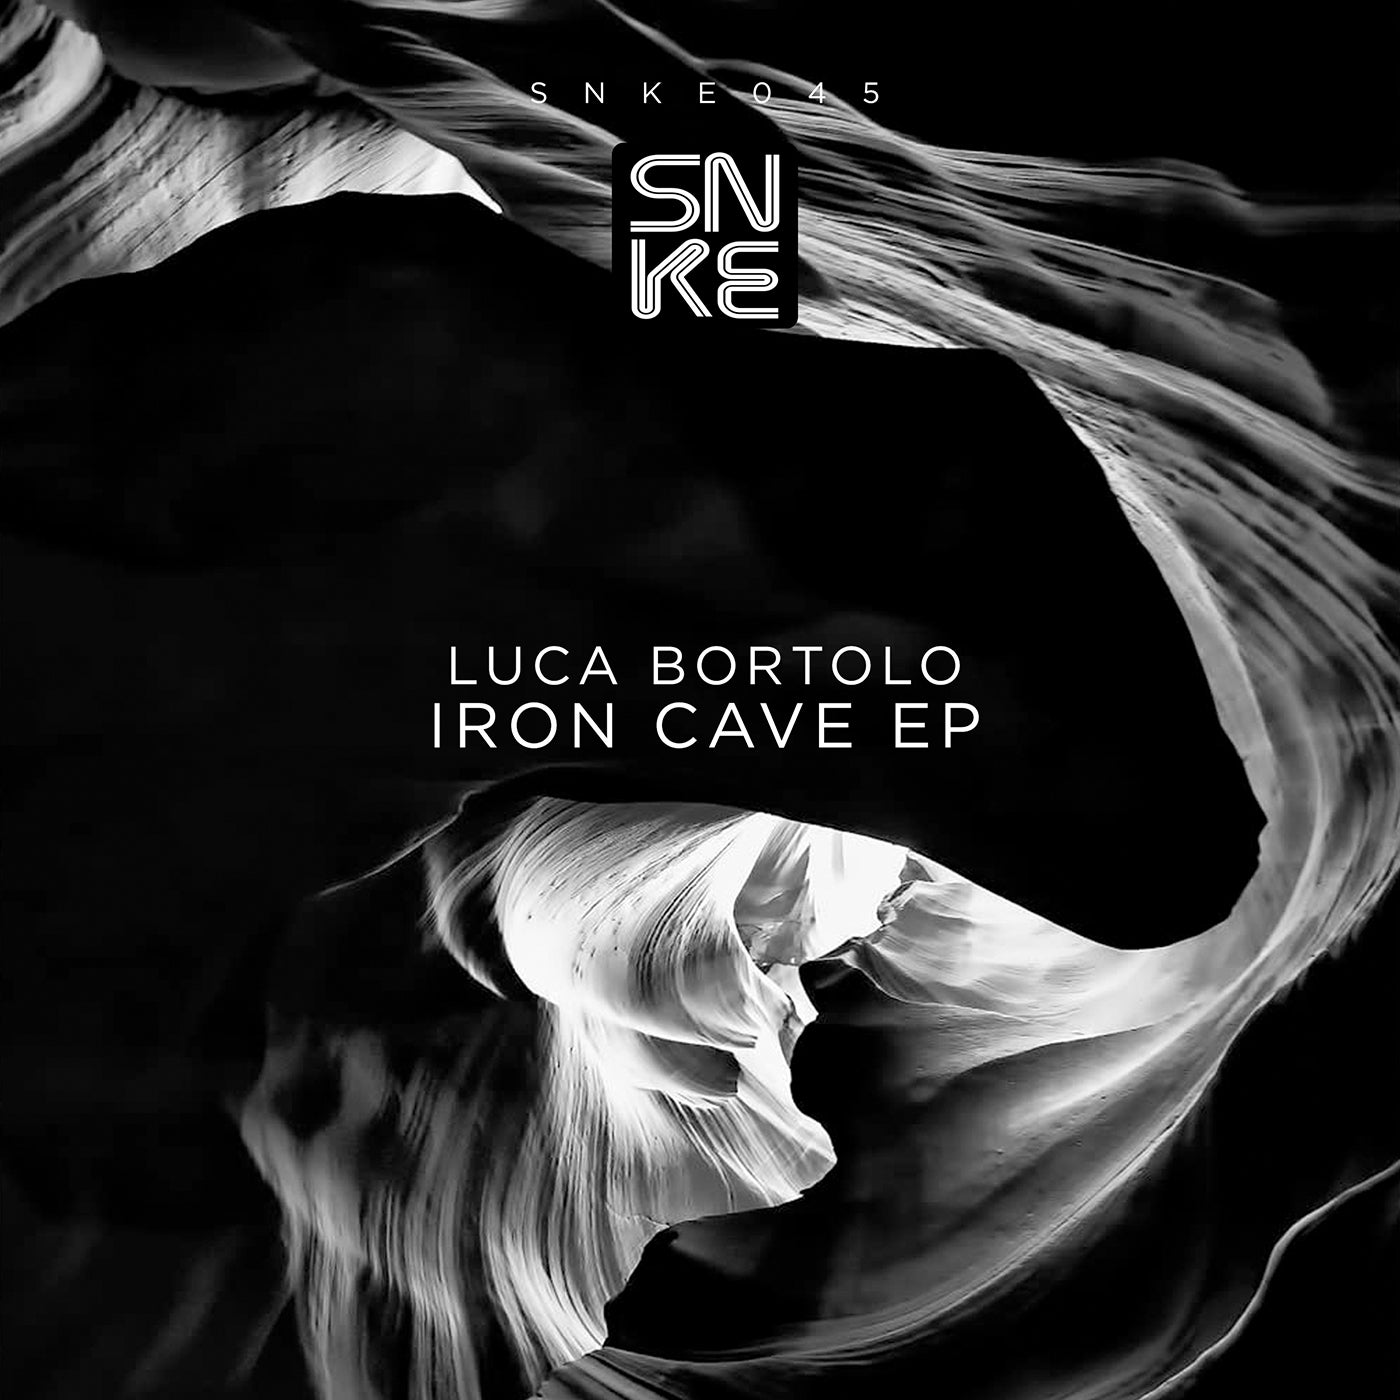 Luca Bortolo - IRON CAVE EP [SNKE045]